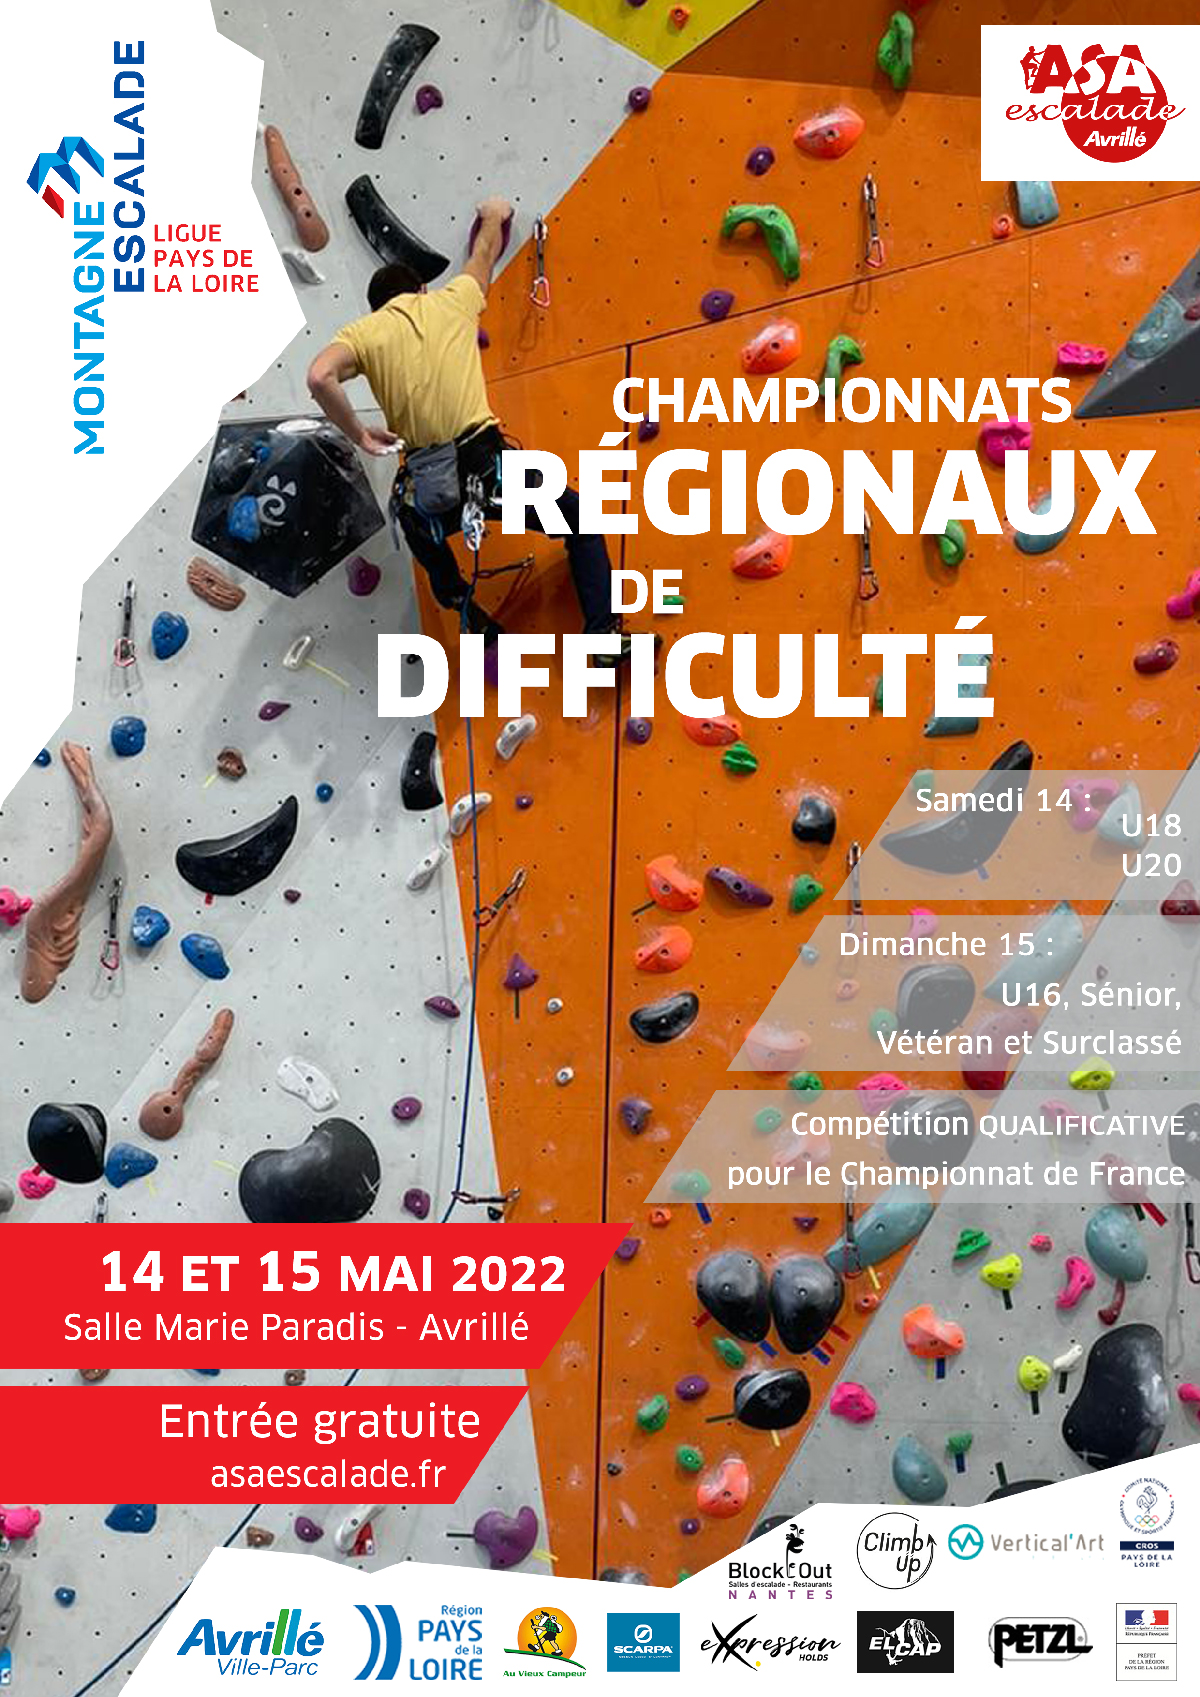 Affiche illustrant les championnats régionaux de Difficulté du 14 et 15 mai